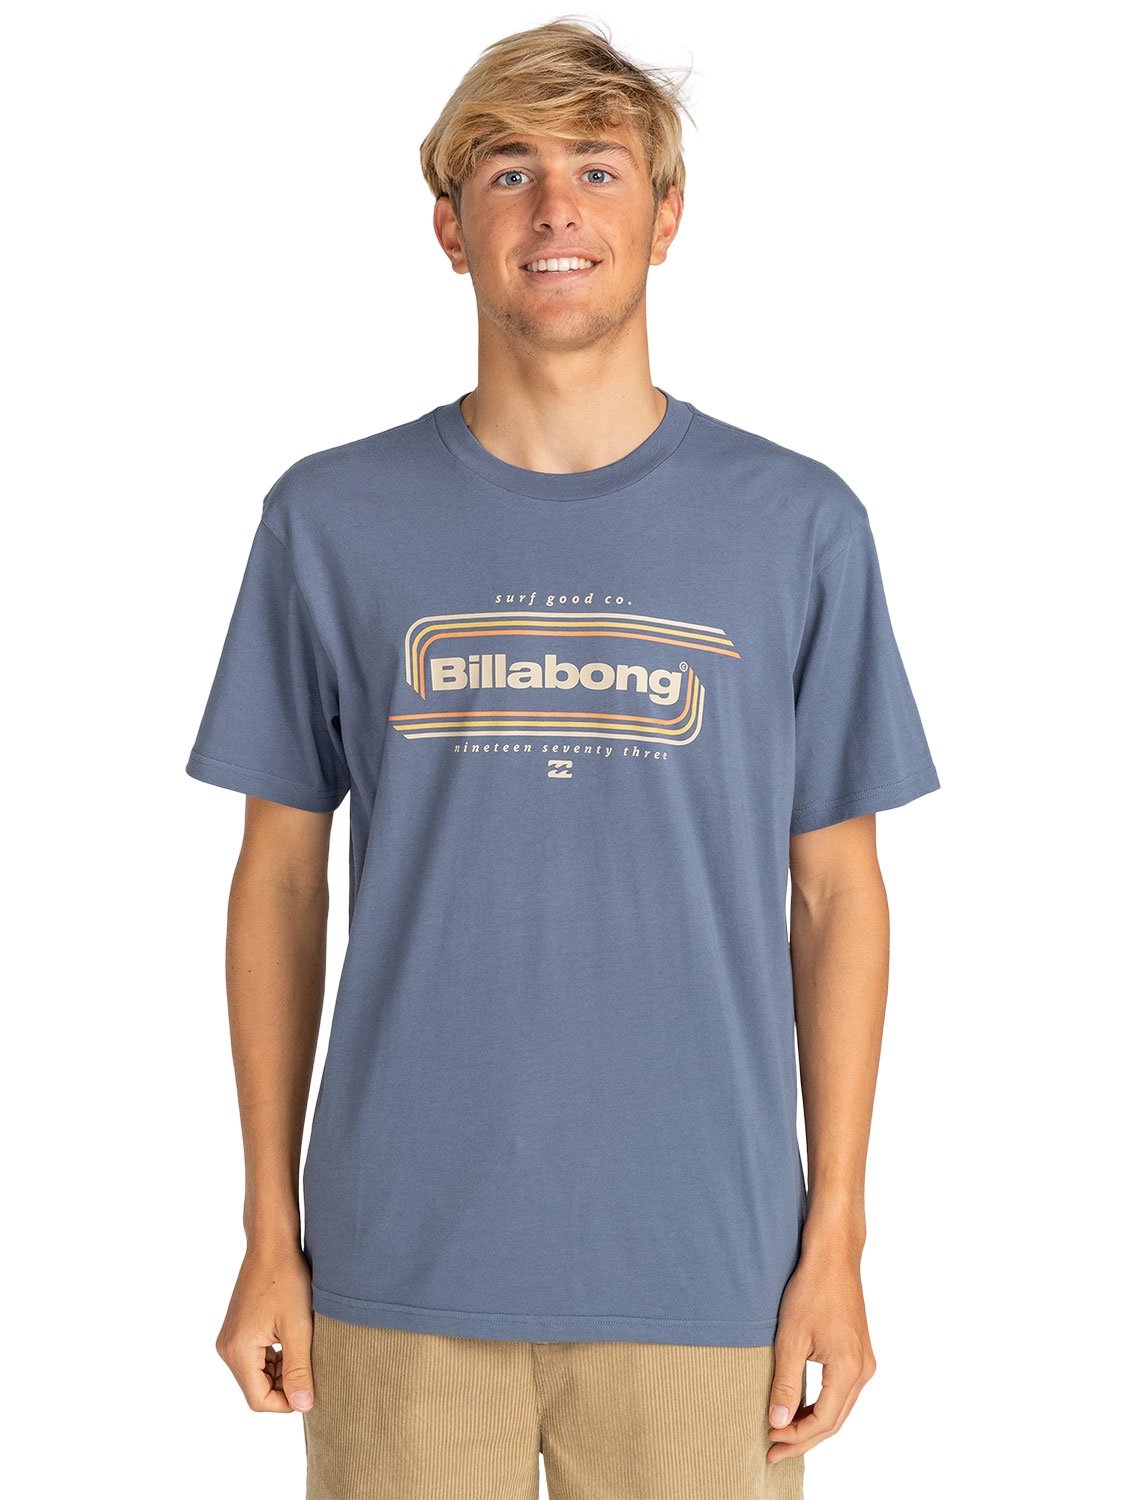 Billabong Men's Insignia T-Shirt